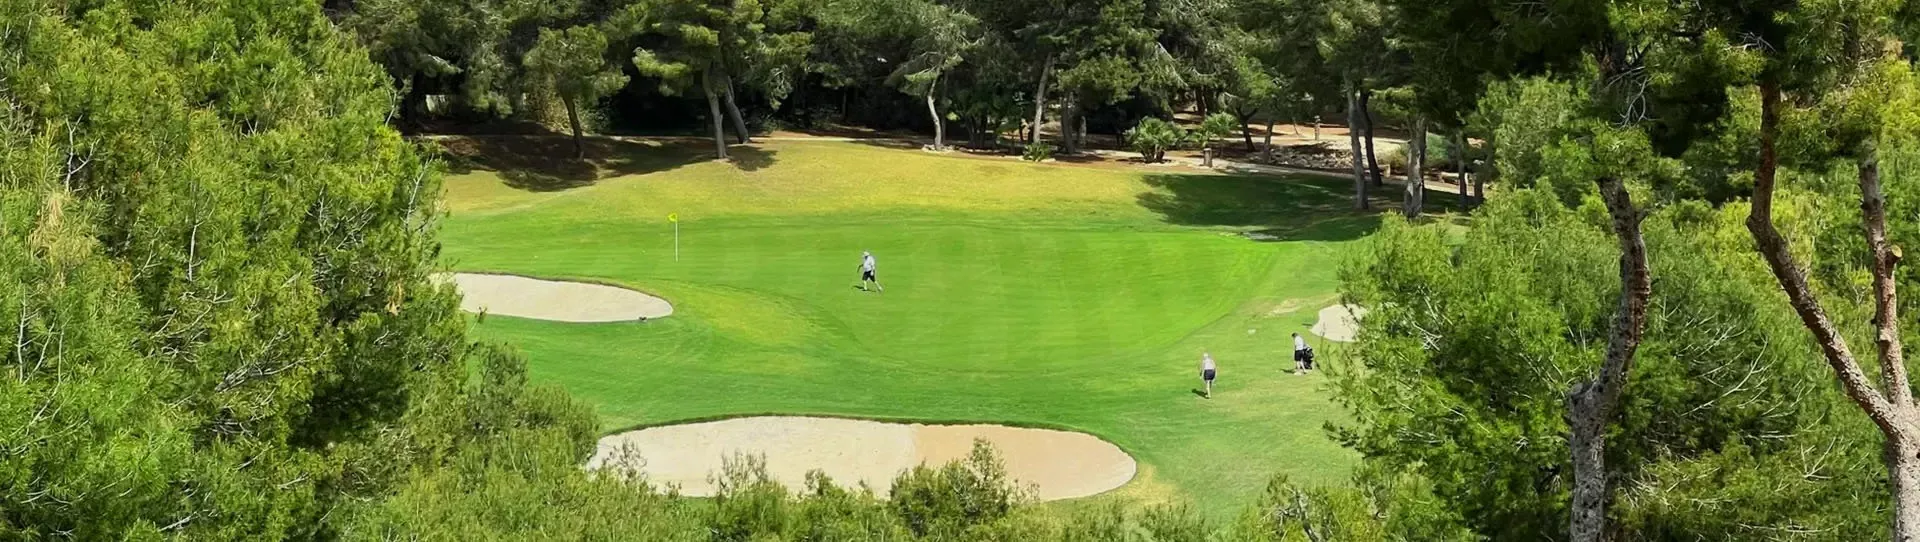 Spain golf courses - Villamartin Golf Course - Photo 2